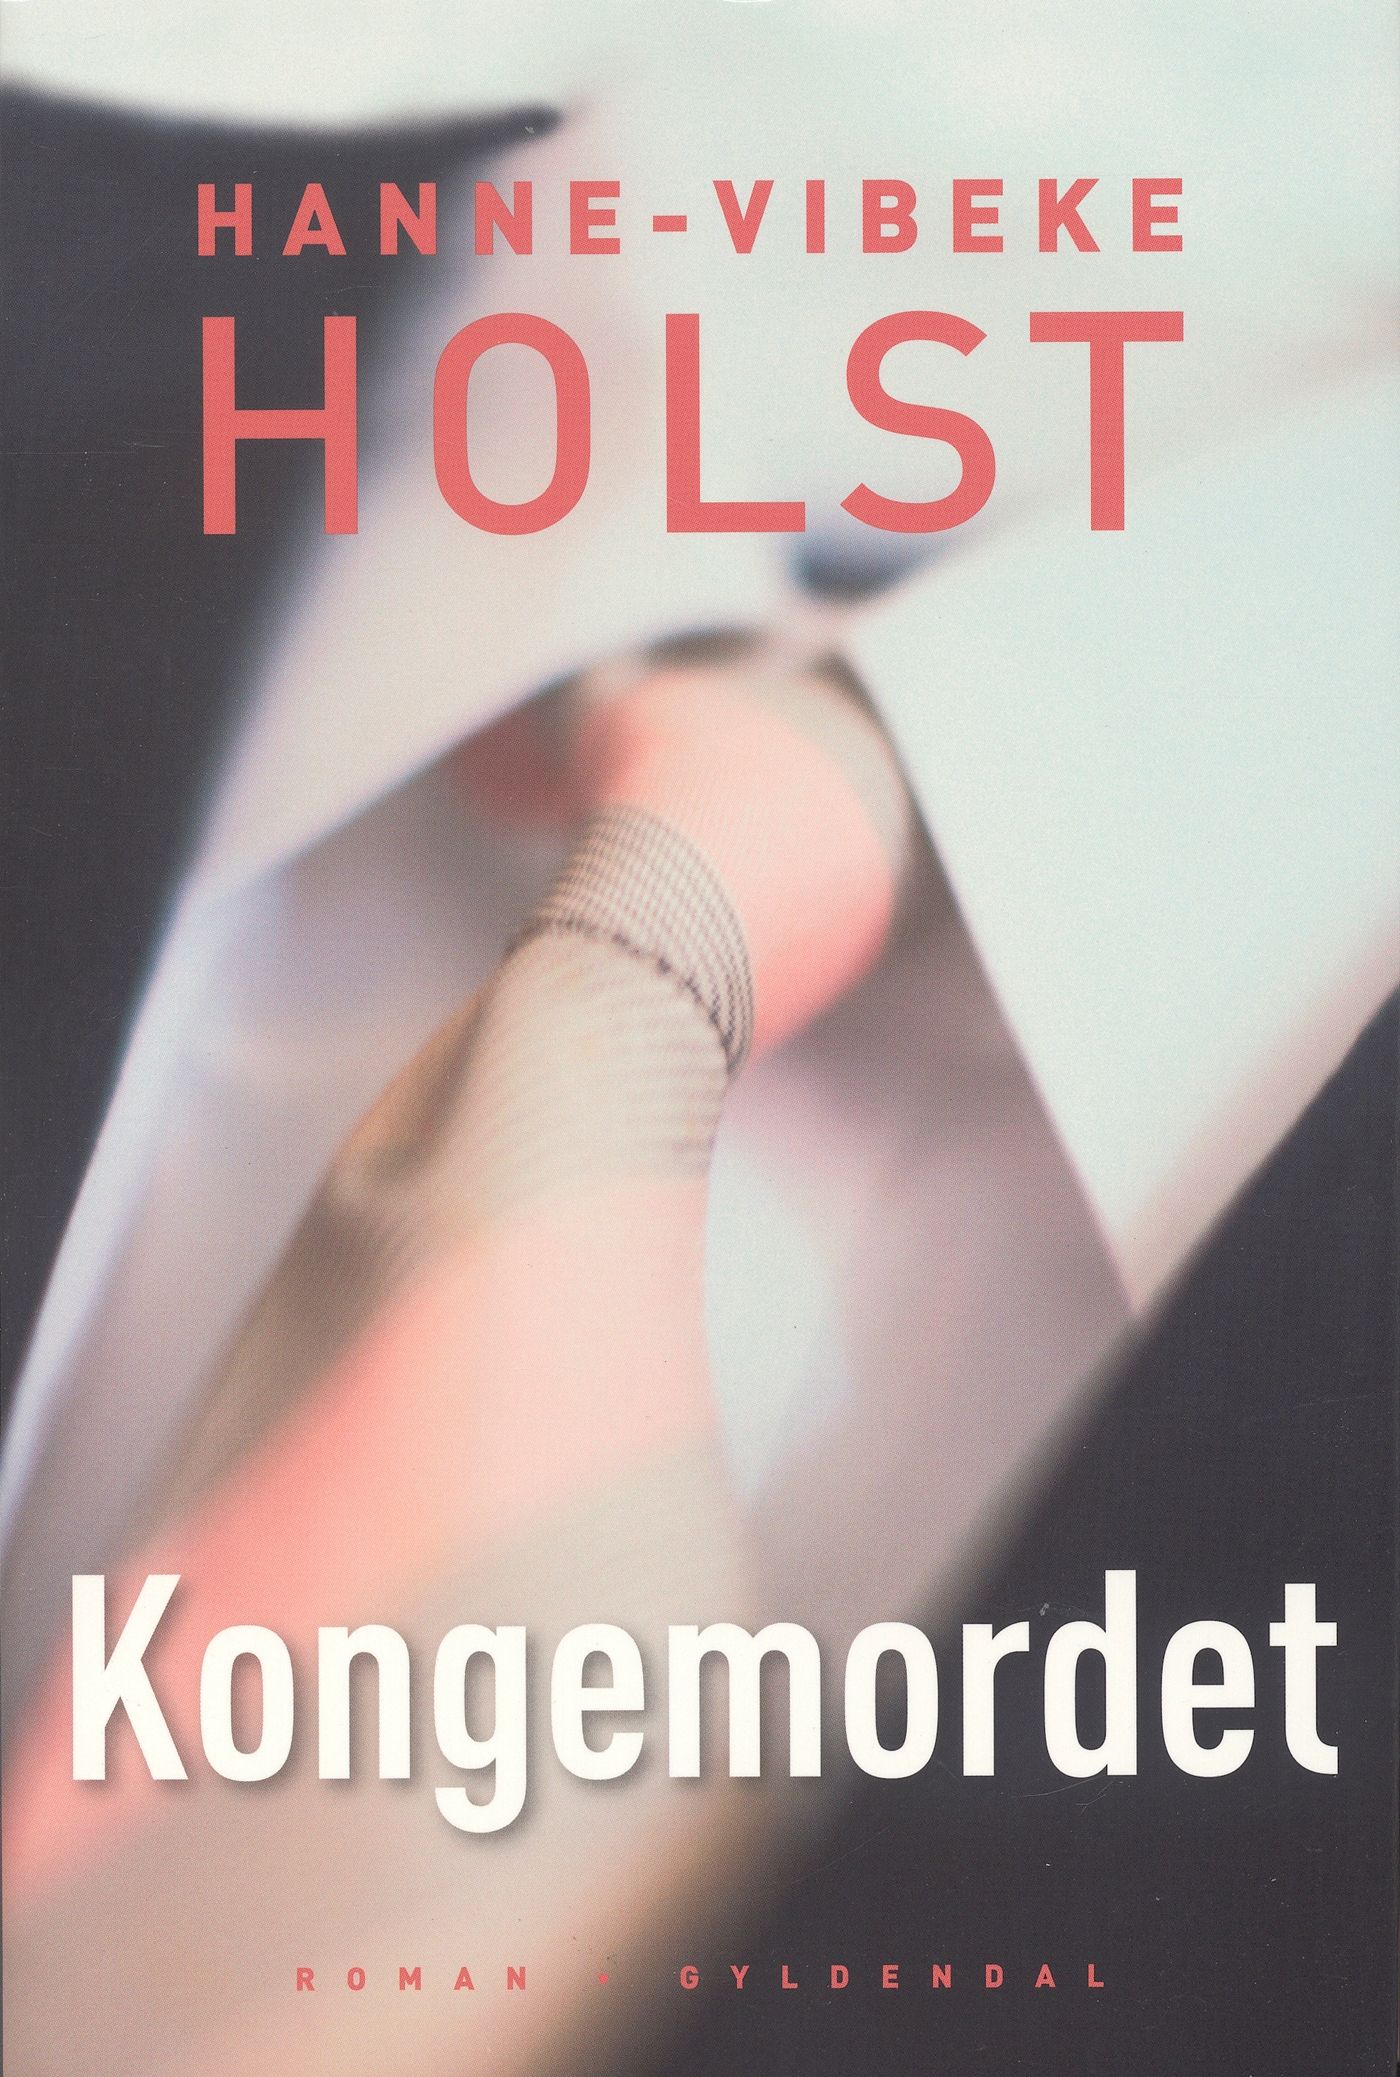 Kongemordet, eBook by Hanne-Vibeke Holst